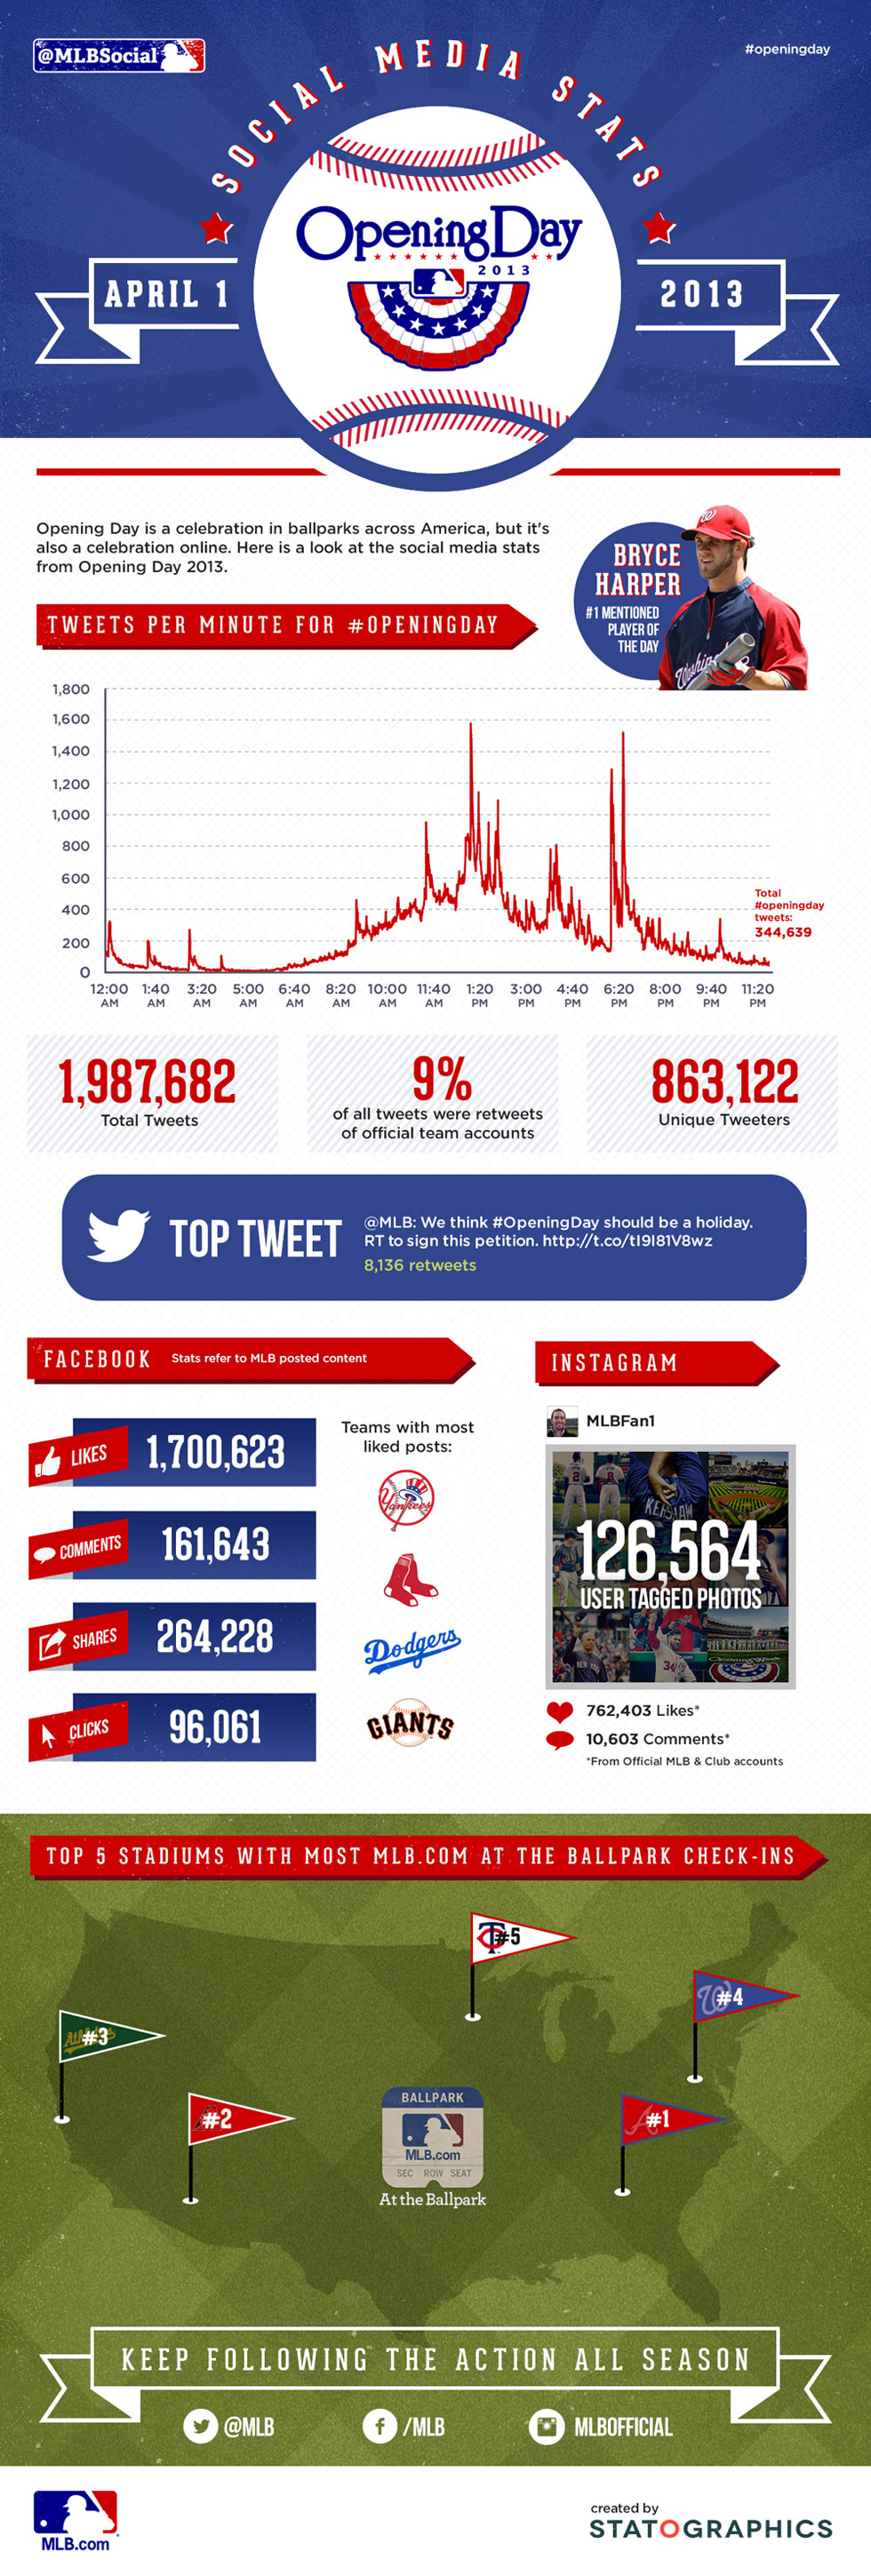 MLB Opening Day 2013 Social Media Stats